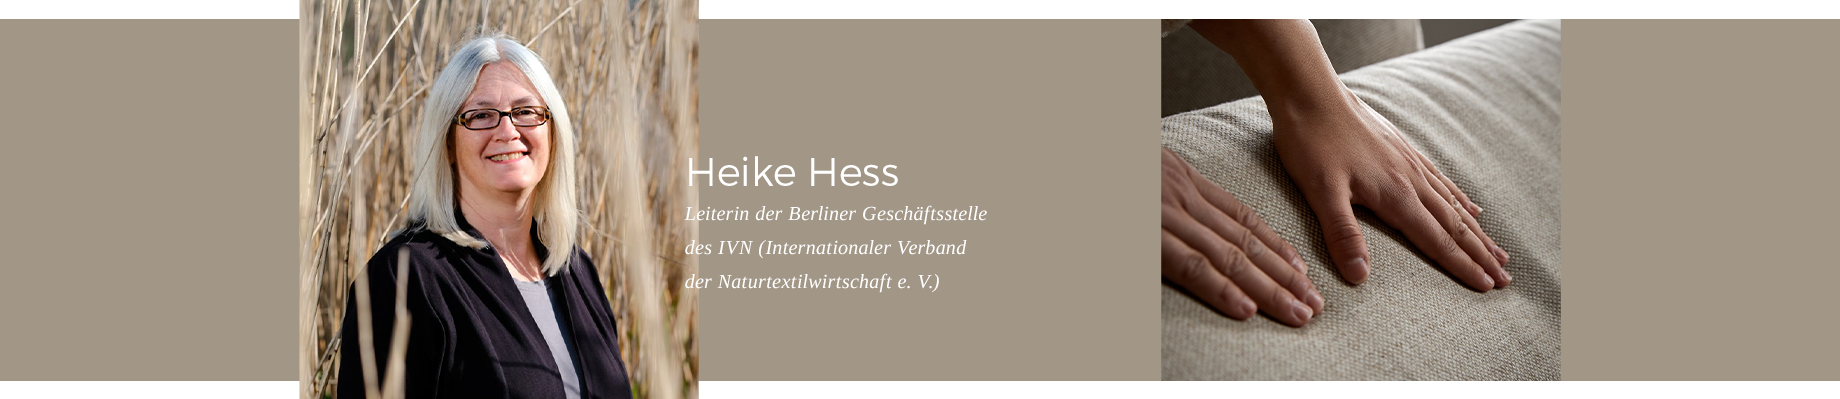 Erfahren Sie mehr: Heike Hess, Leiterin der IVN-Geschäftsstelle in Berlin